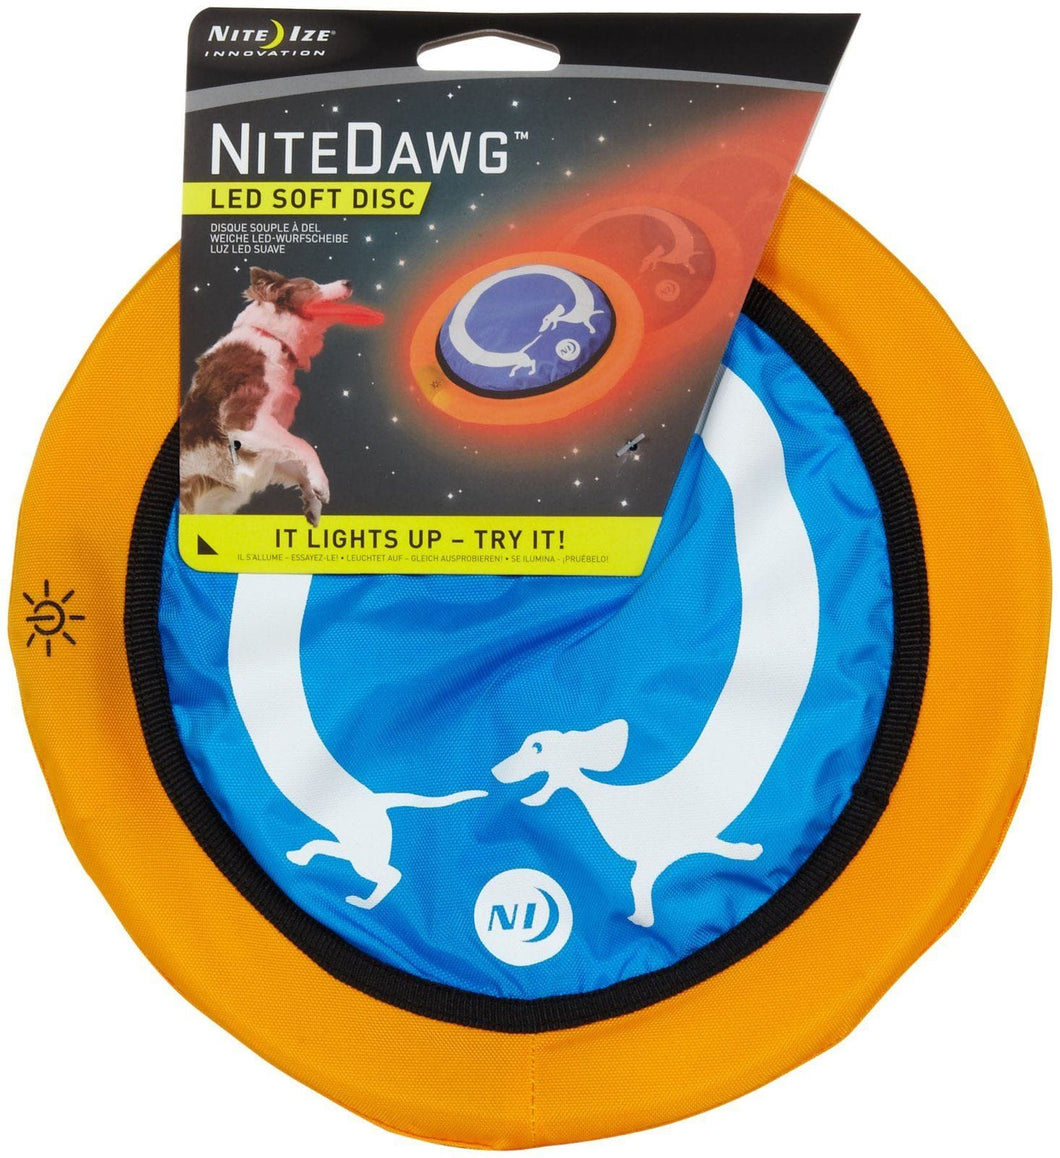 Nite Dawg Dog Accessories Nite Dawg LED Soft Disc - Red LED